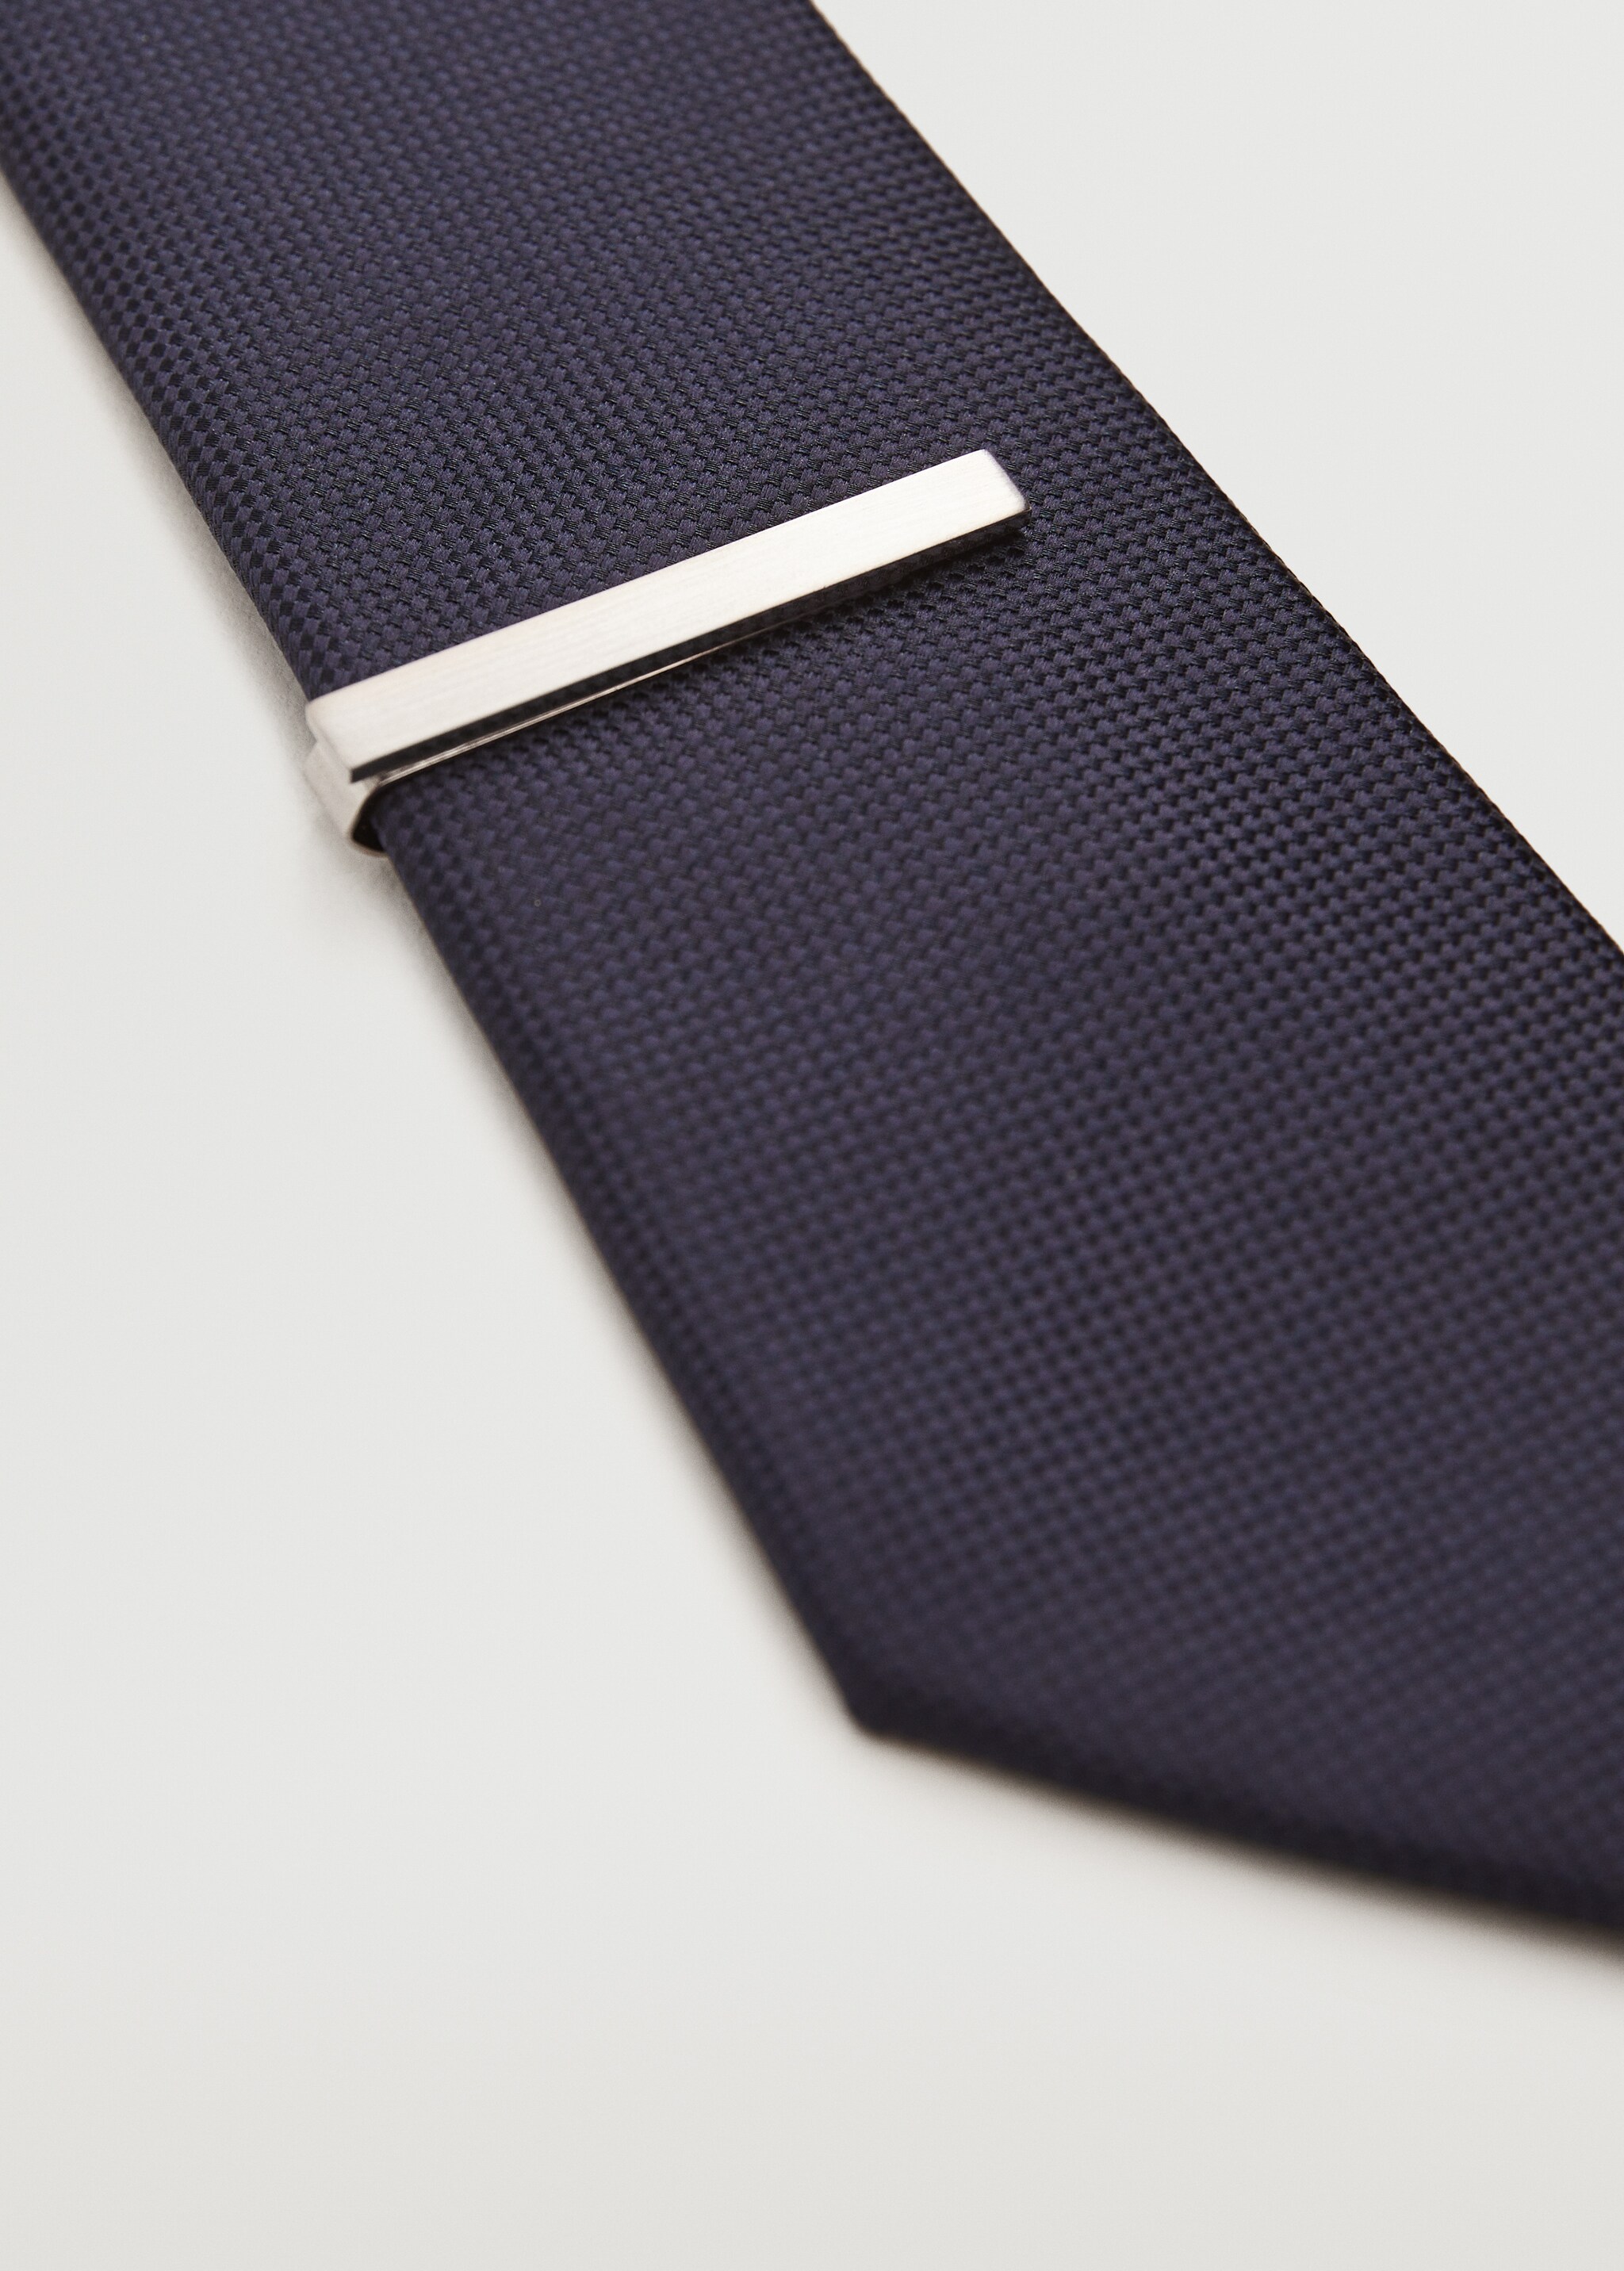 Pasador corbata metálico - Detalle del artículo 3